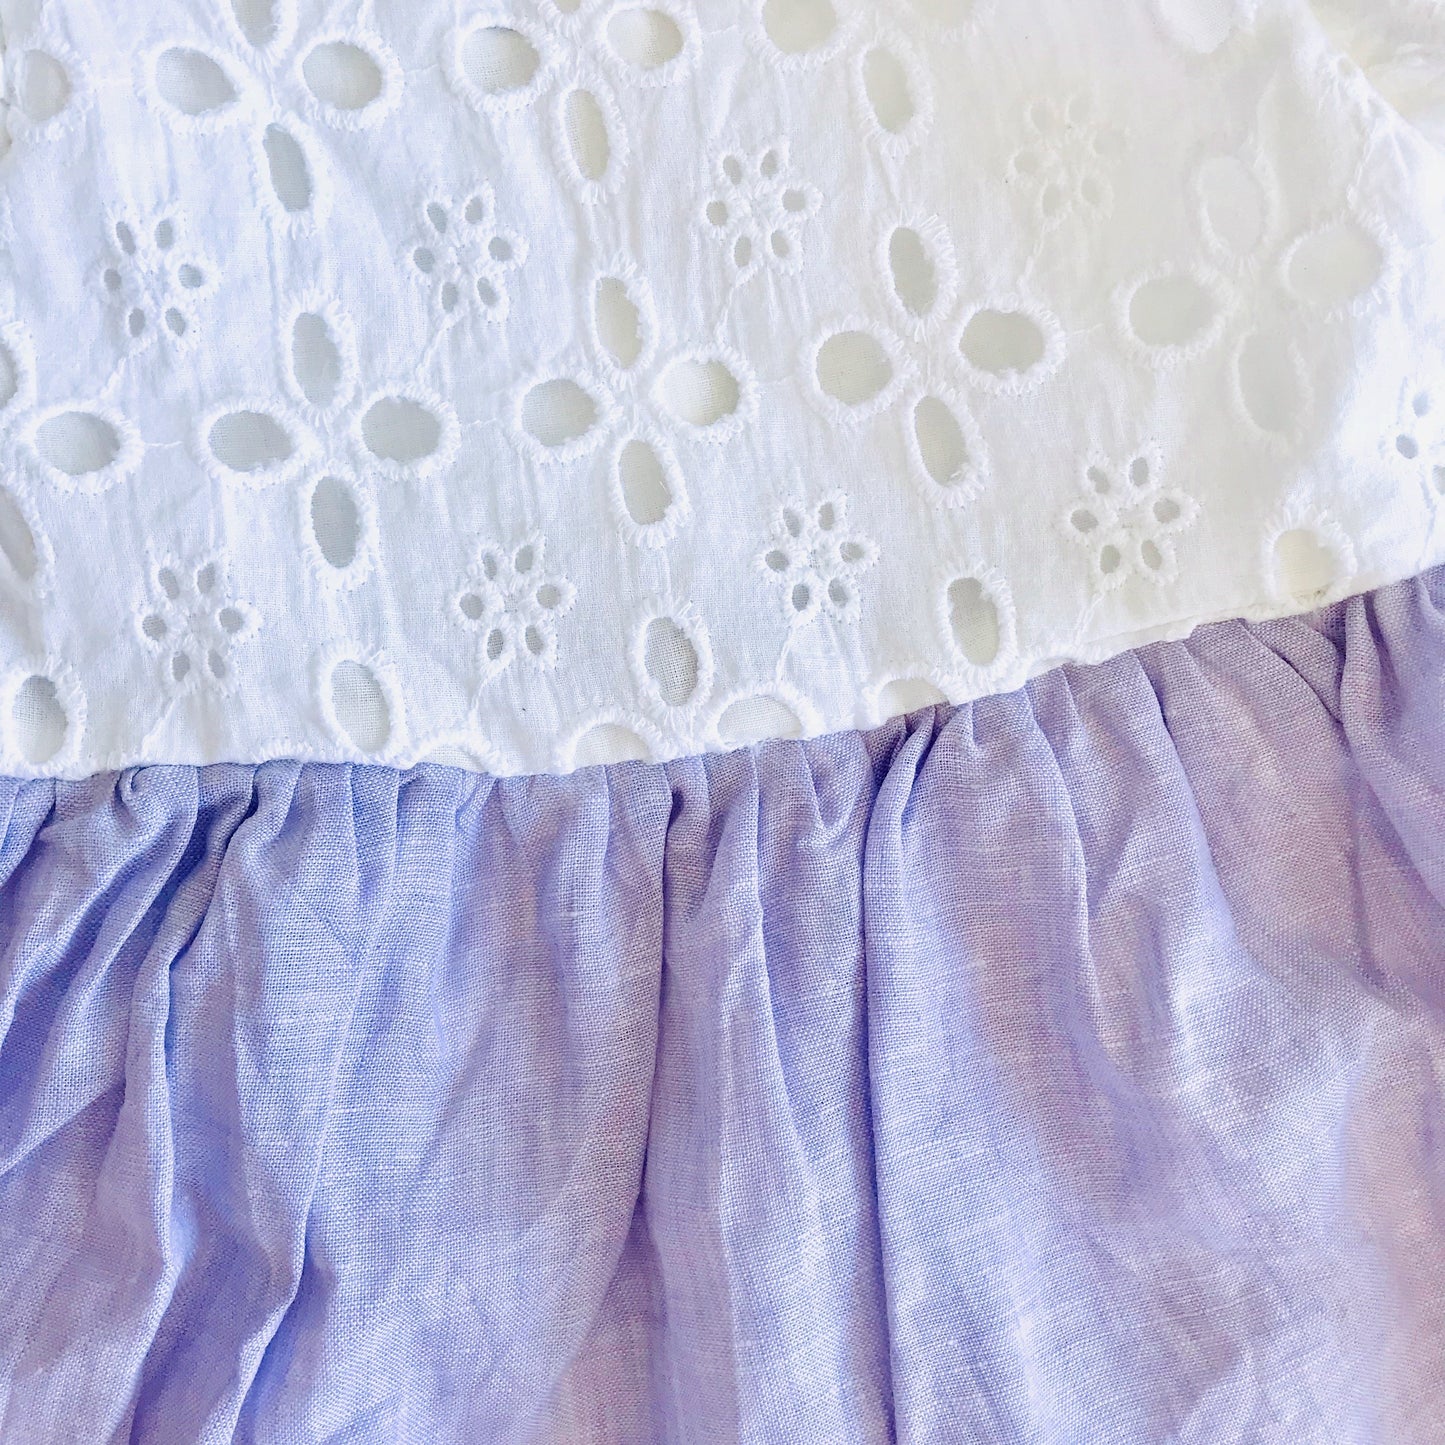 Periwinkle Dress in White Eyelet & Purple Linen - Lil' Tati